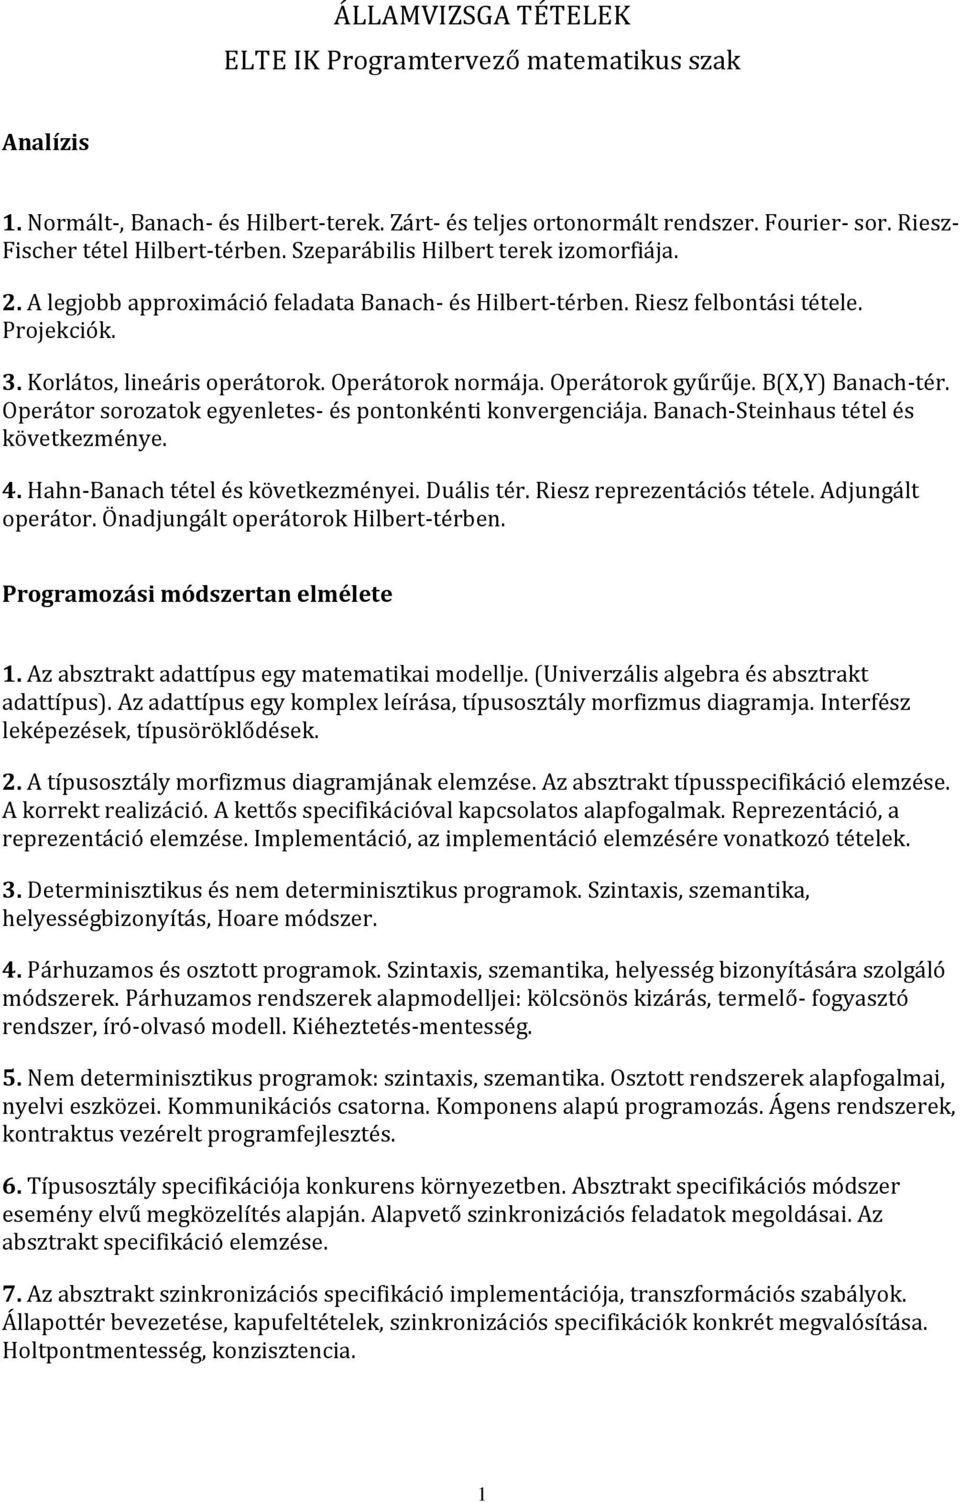 ÁLLAMVIZSGA TÉTELEK ELTE IK Programtervező matematikus szak - PDF Ingyenes  letöltés